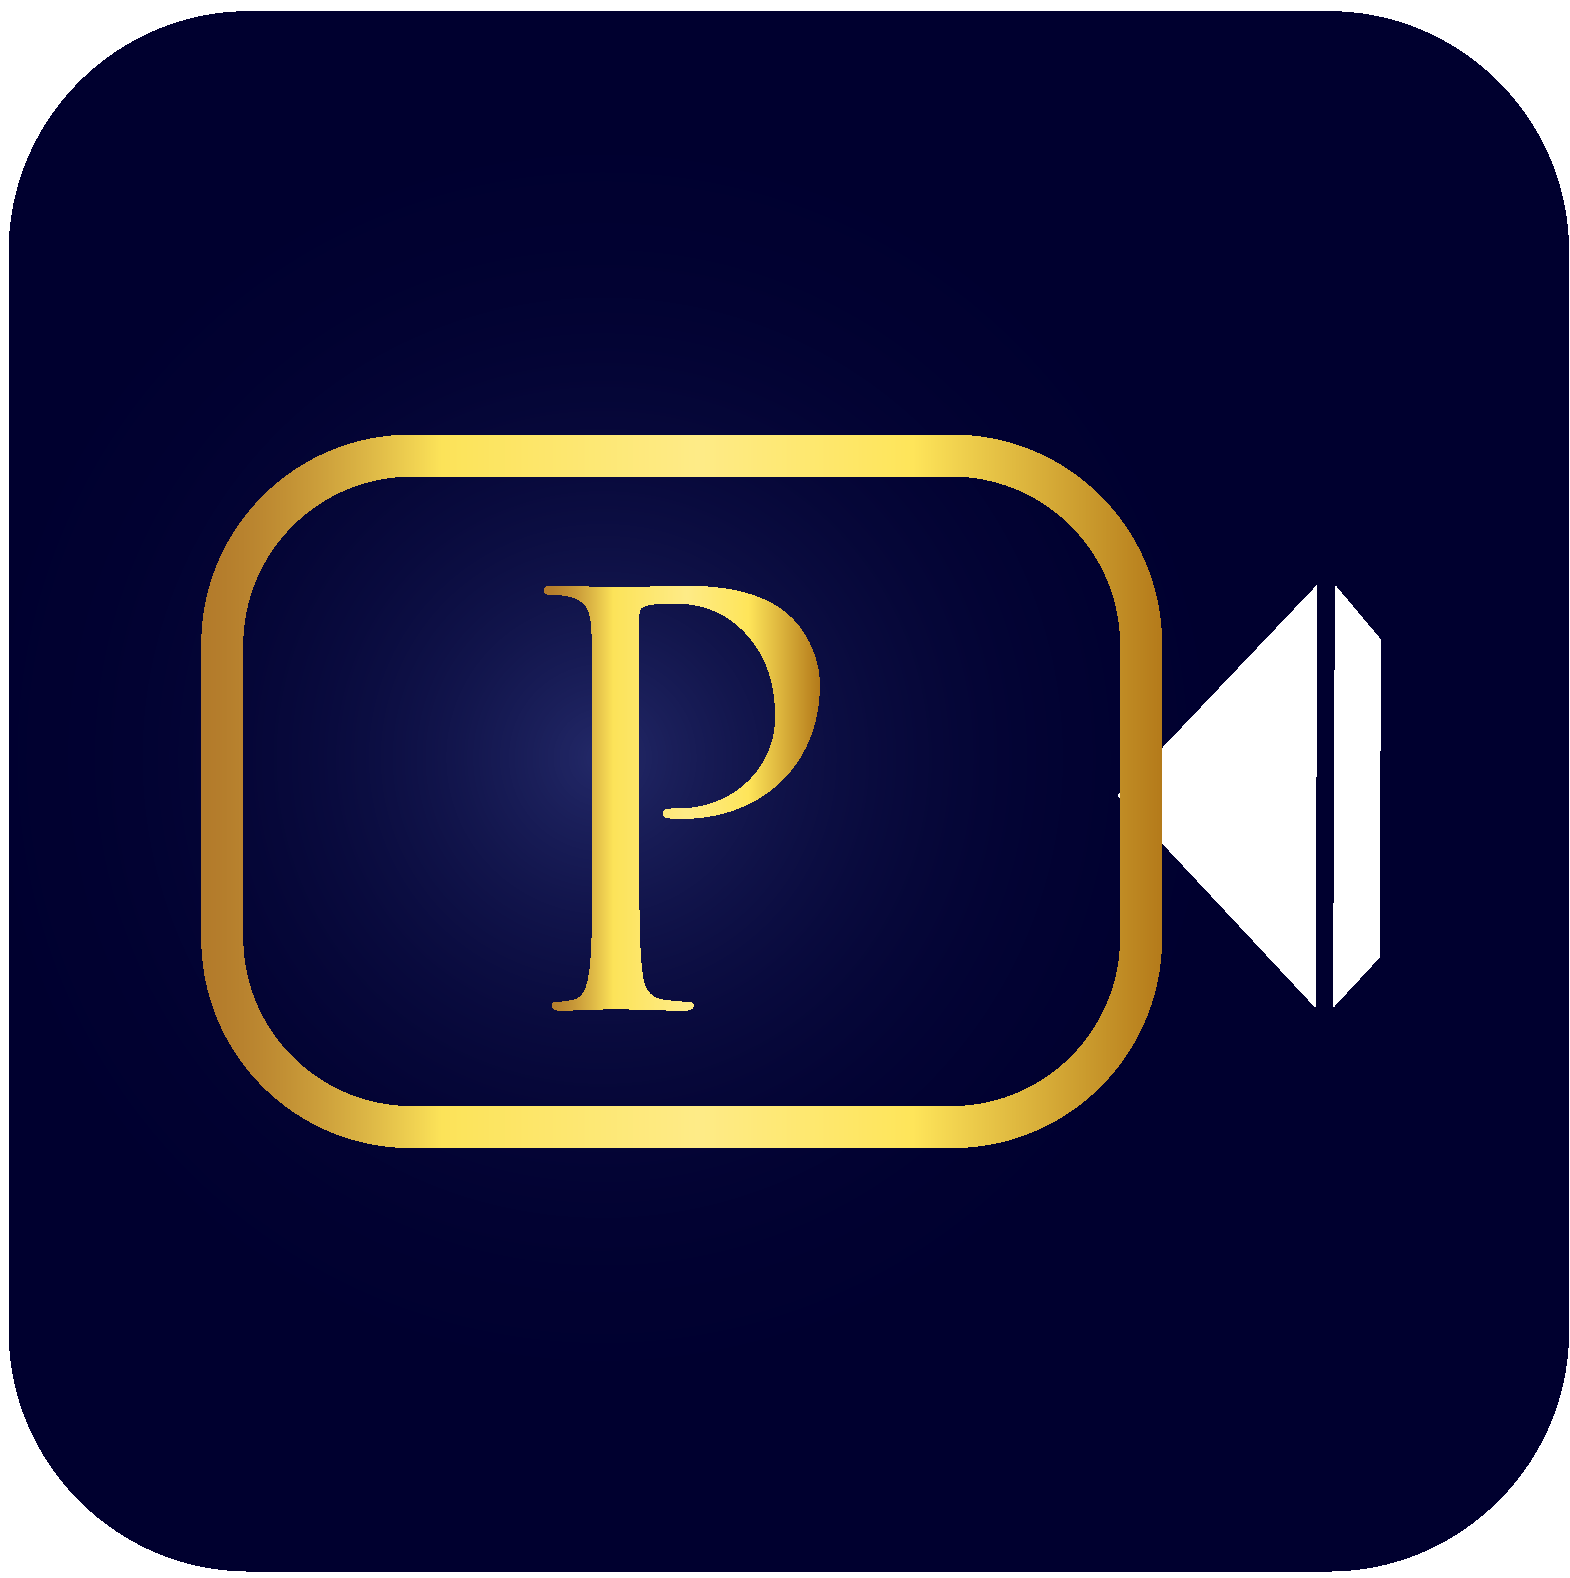 plushmeet_logo